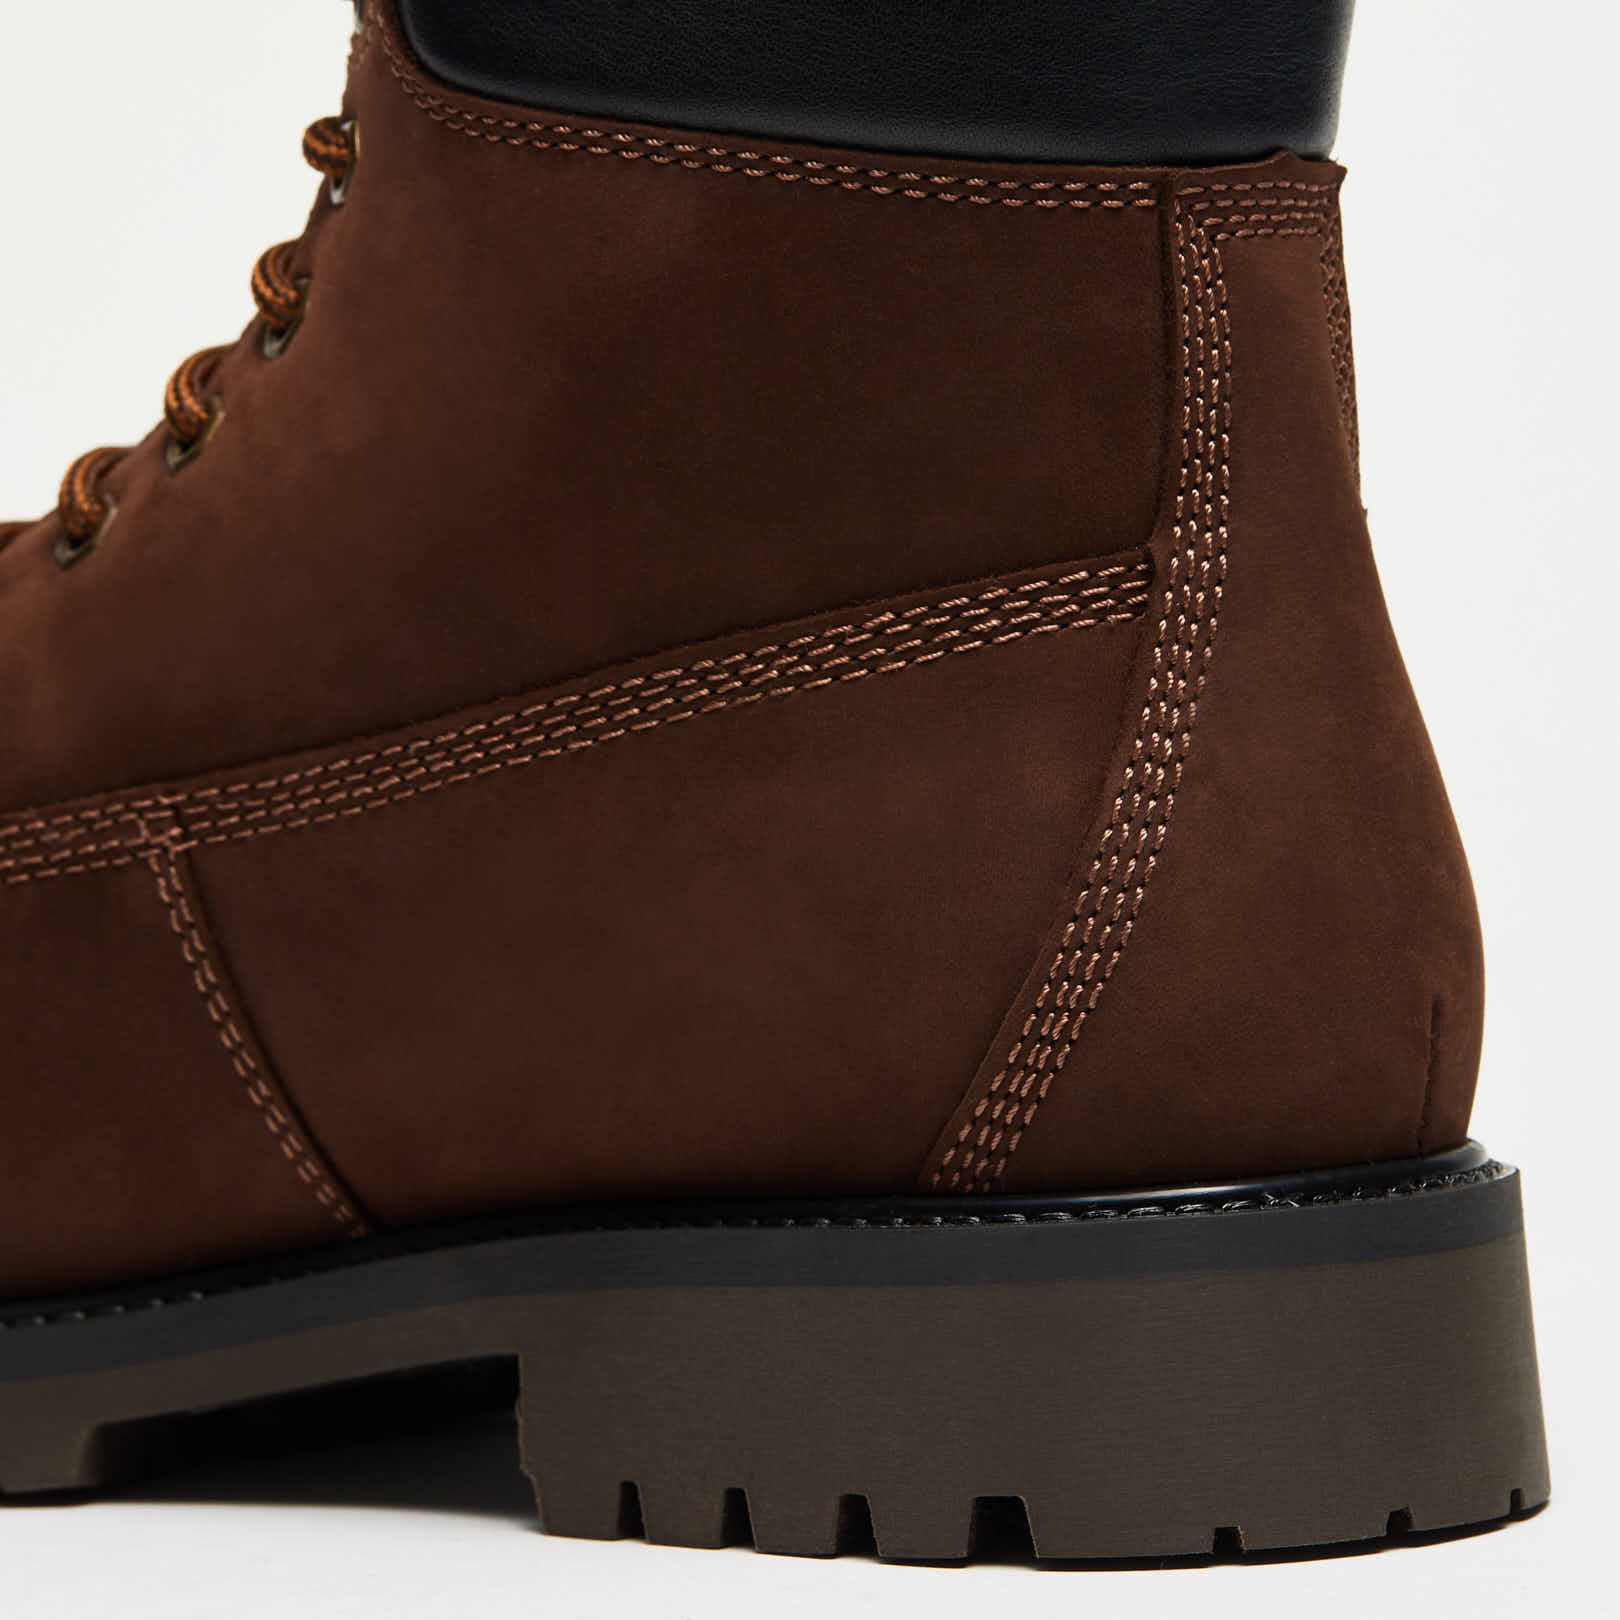 Ботинки мужские ASPEN (цвет коричневый, нубук) — купить по цене 6040 р. в  интернет-магазине RALF RINGER | Стильная мужская обувь в Москве